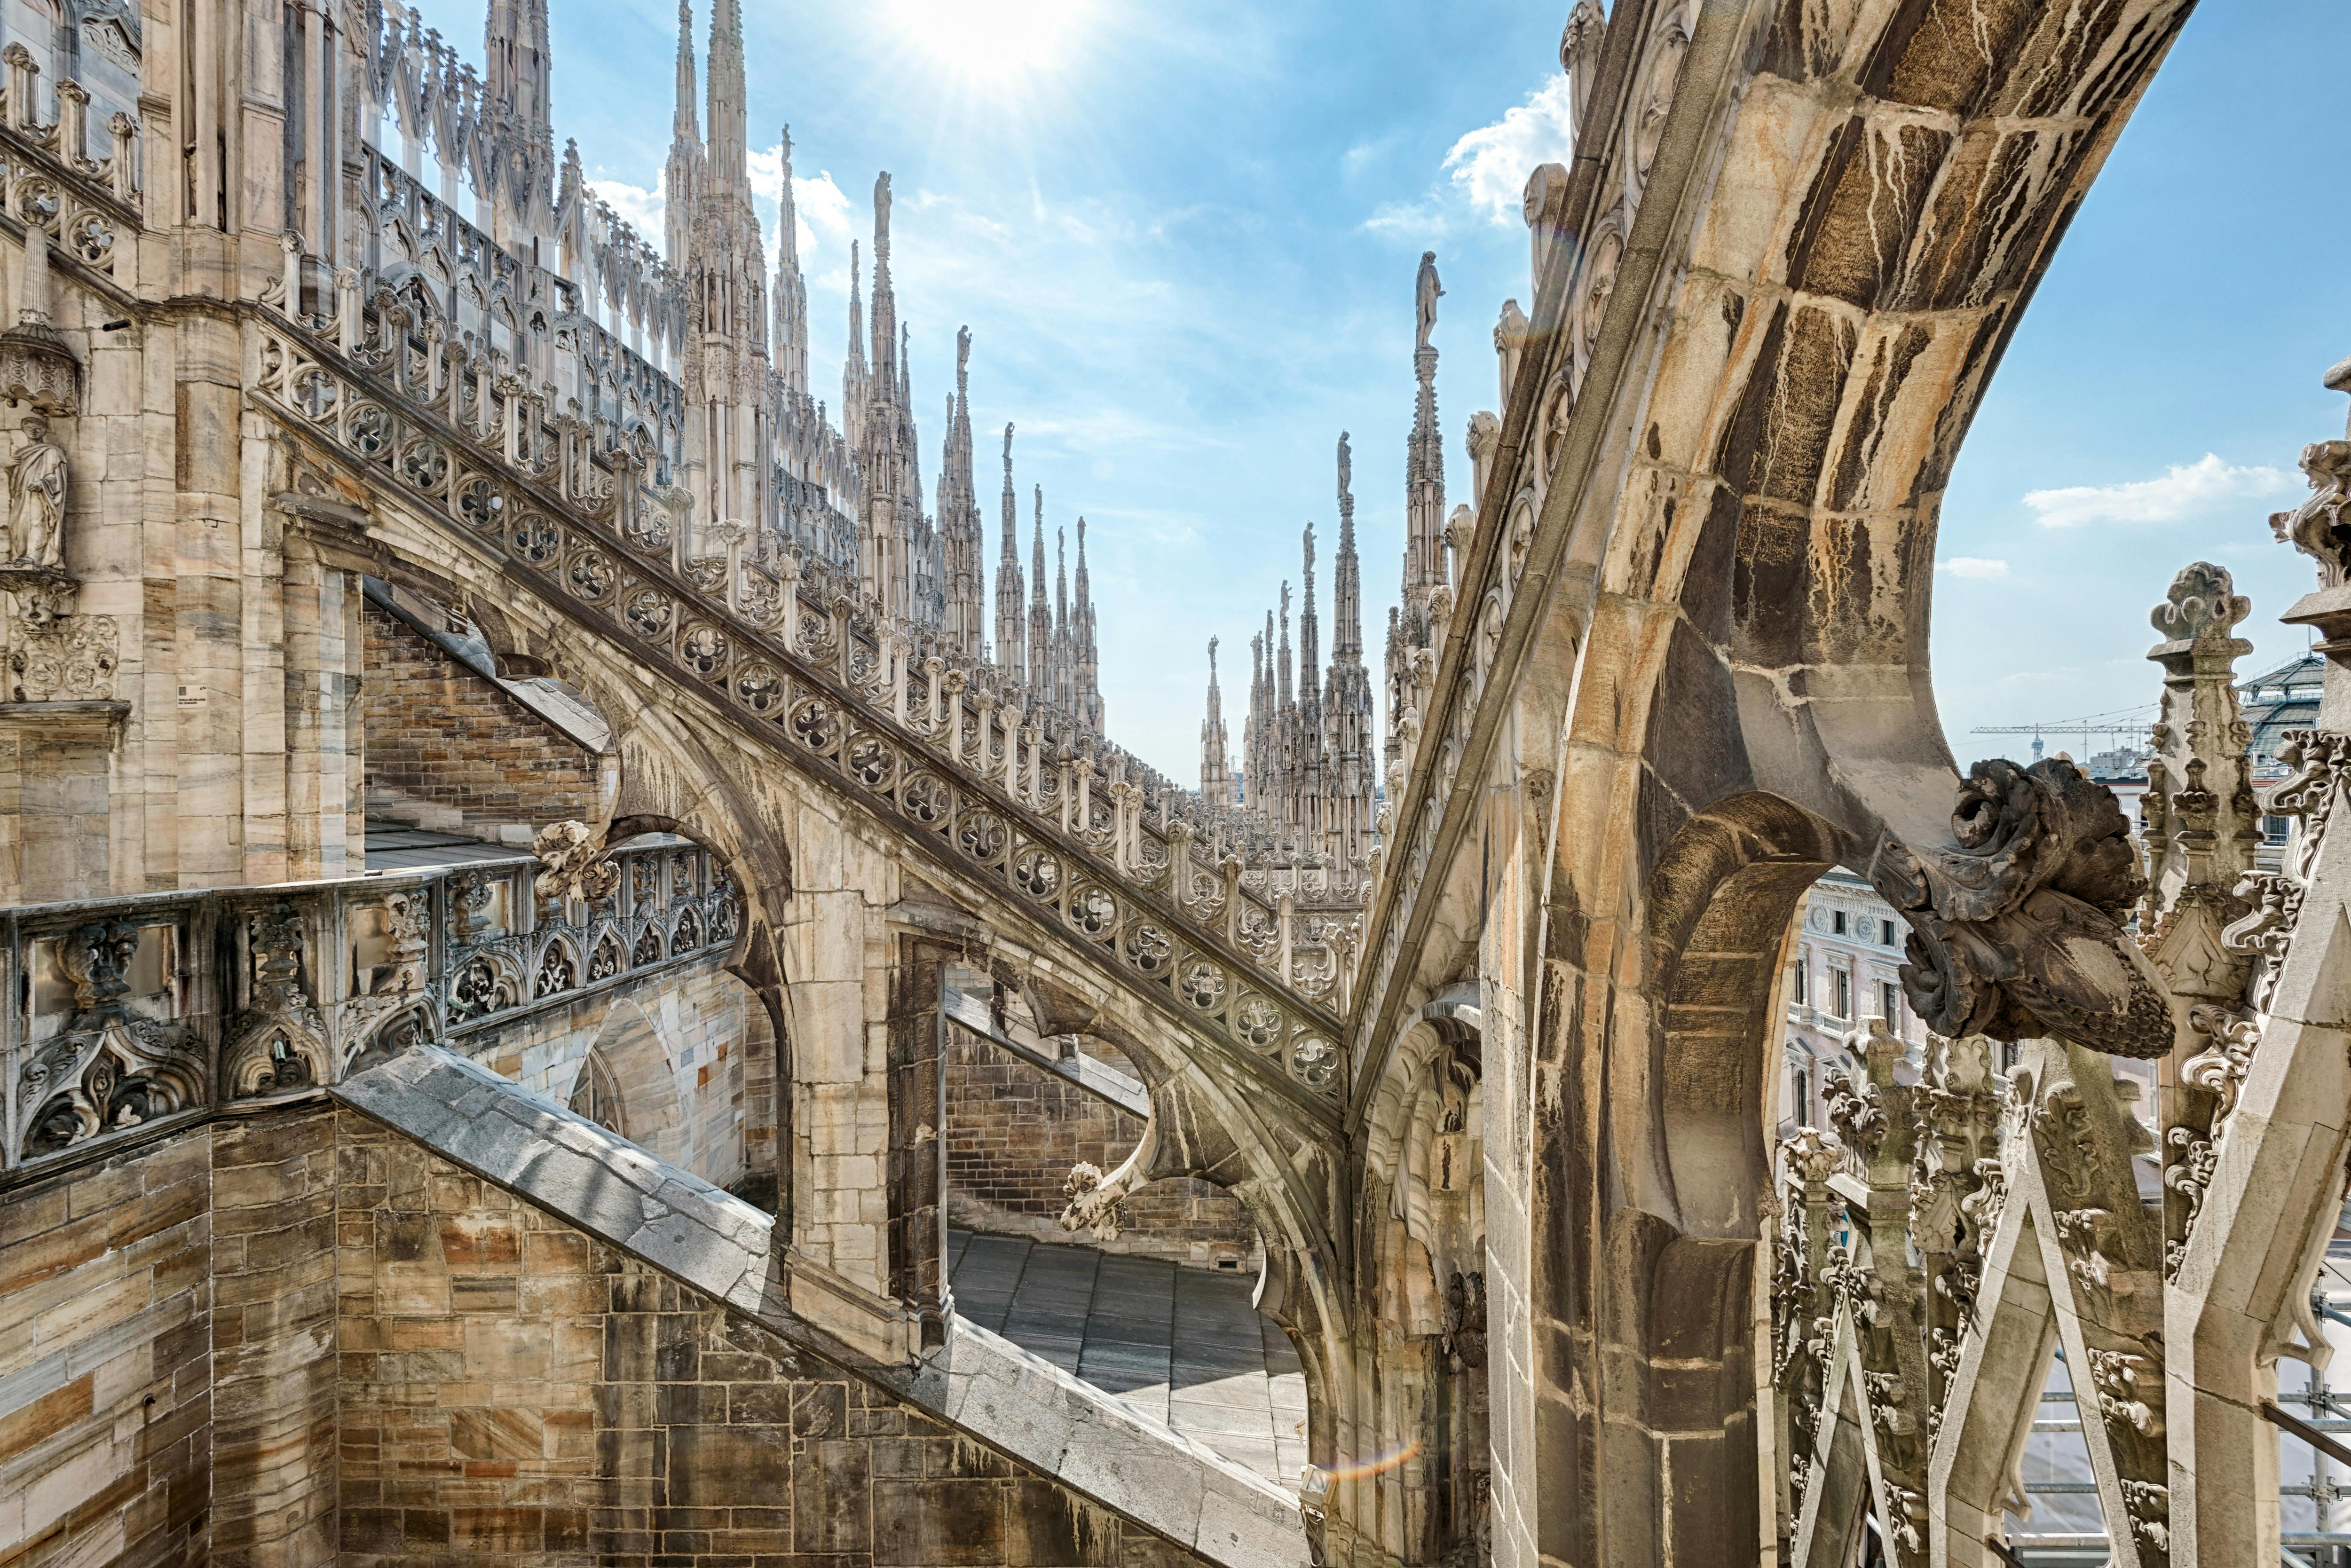 Excursão na cobertura do Duomo de Milão sem filas